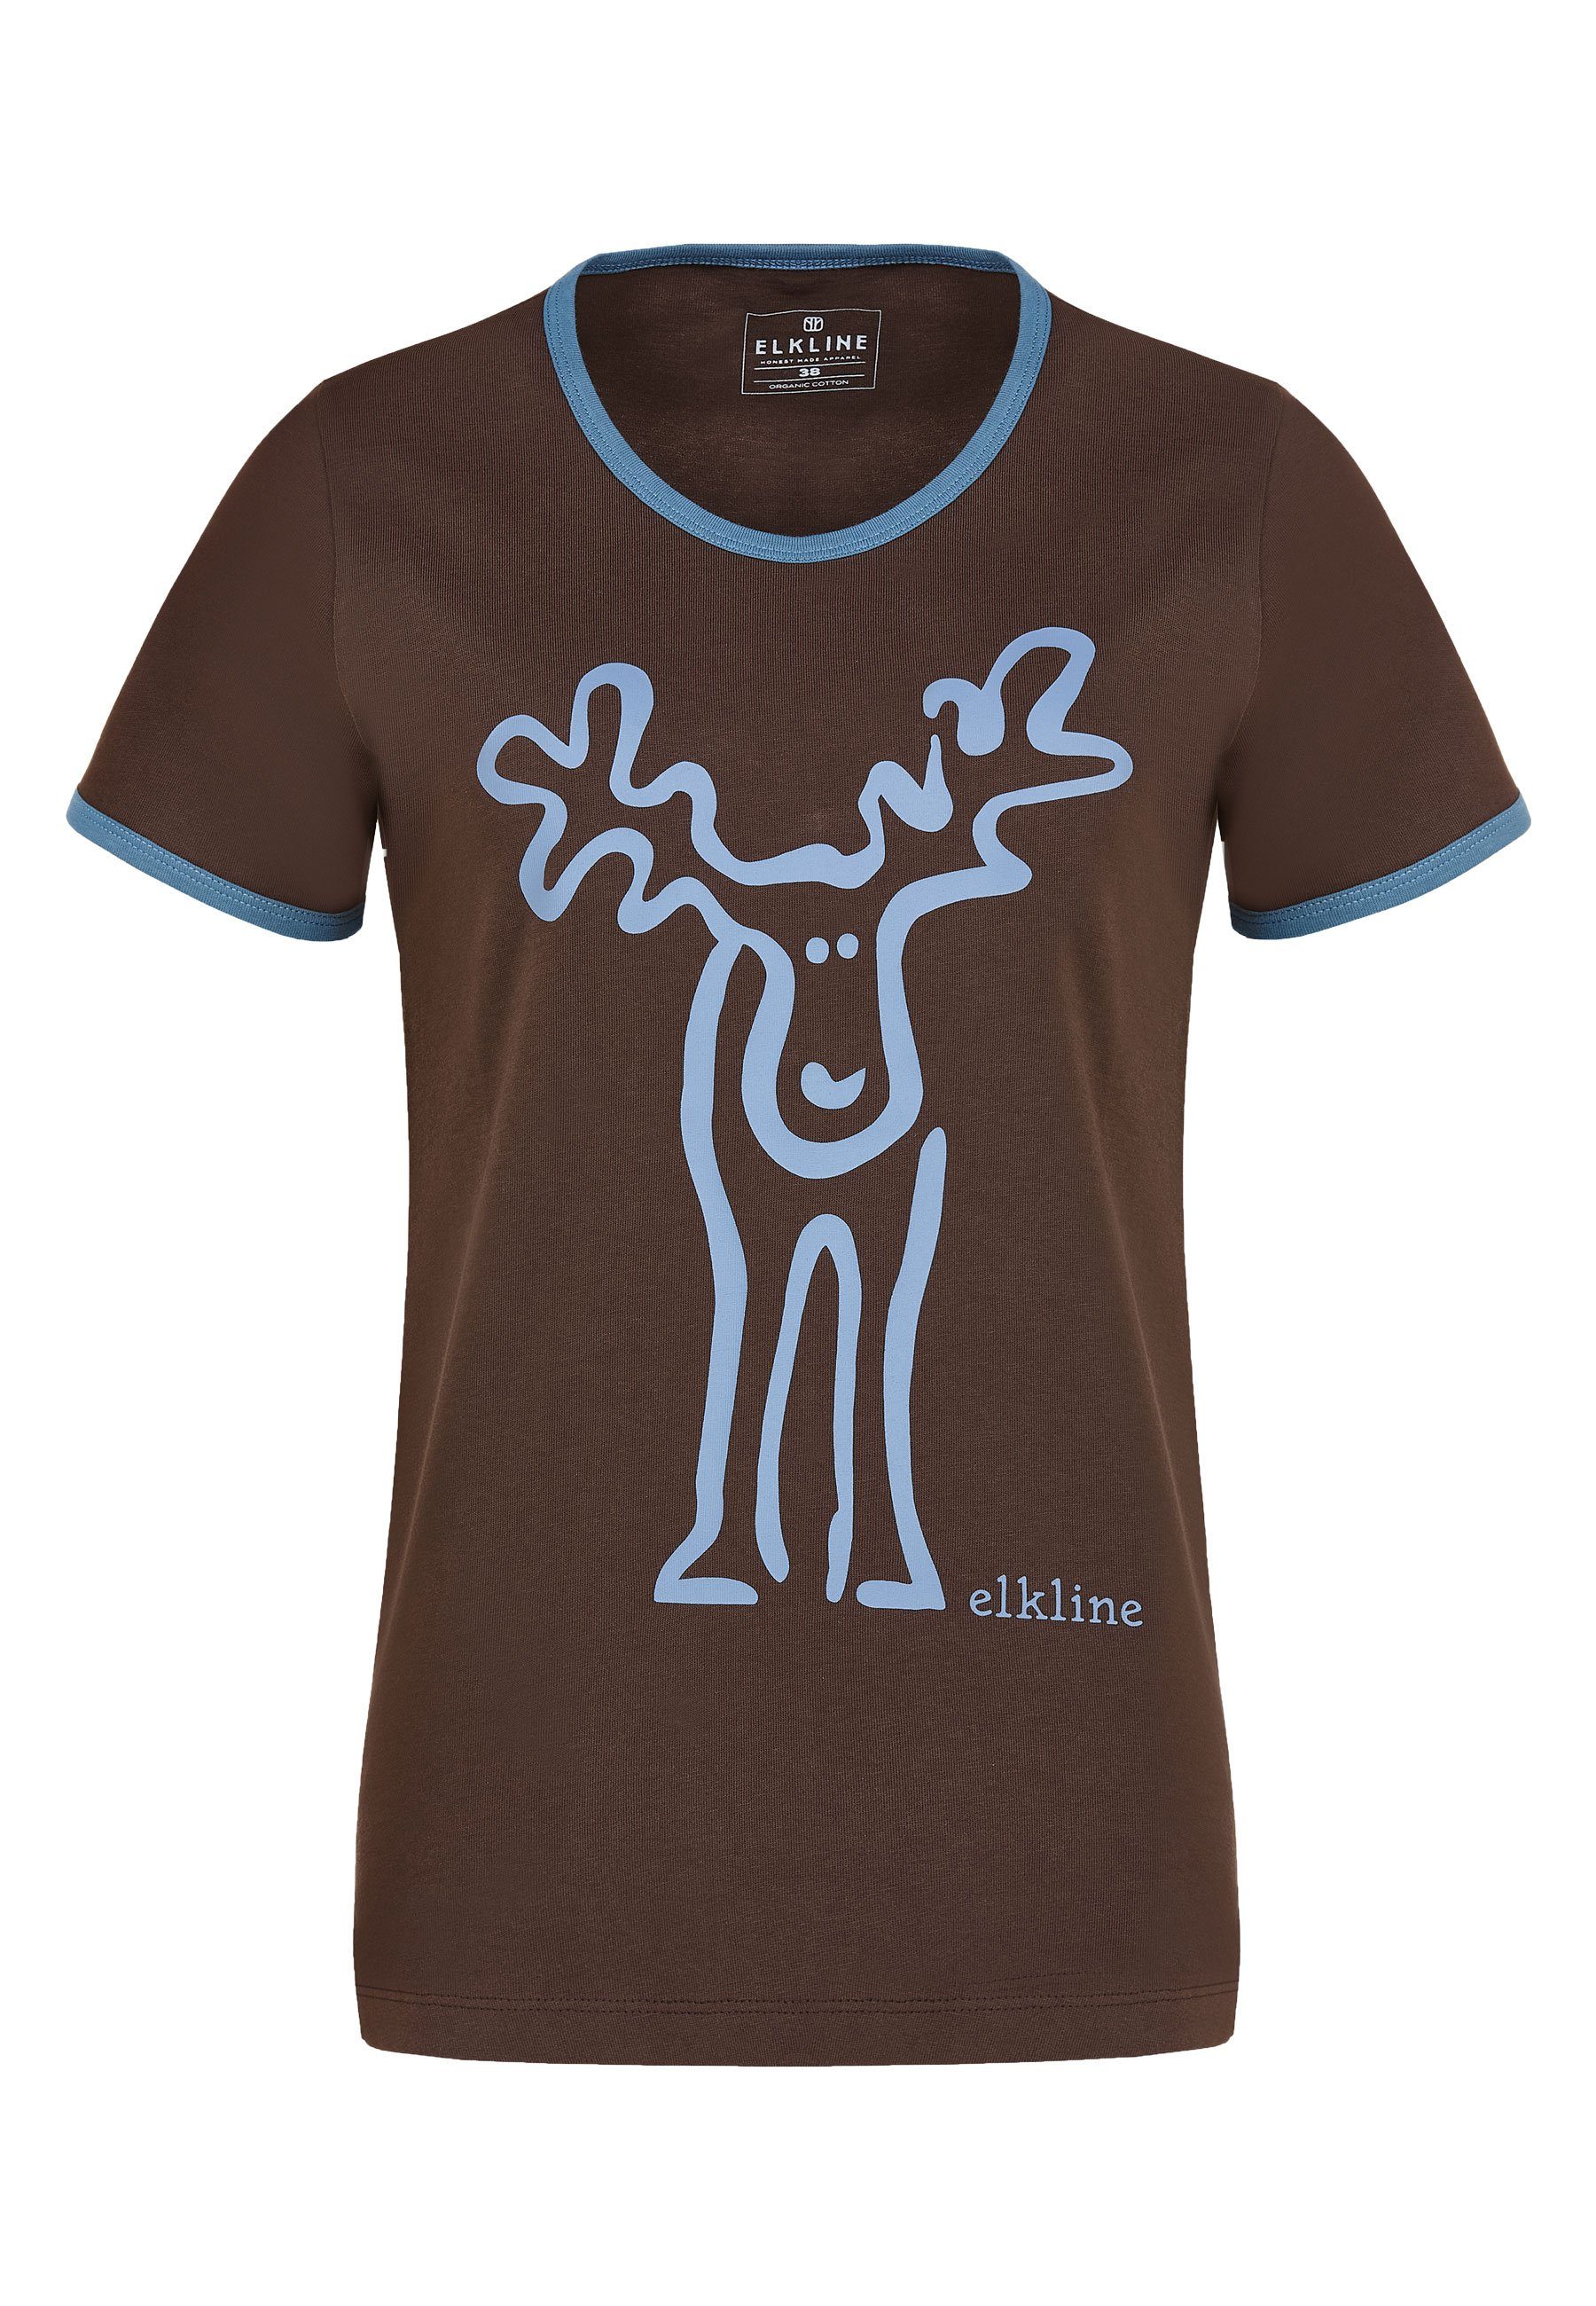 Elkline T-Shirt Rudolfine Brust Elch - Rücken Retro Print und ashblue chocolate